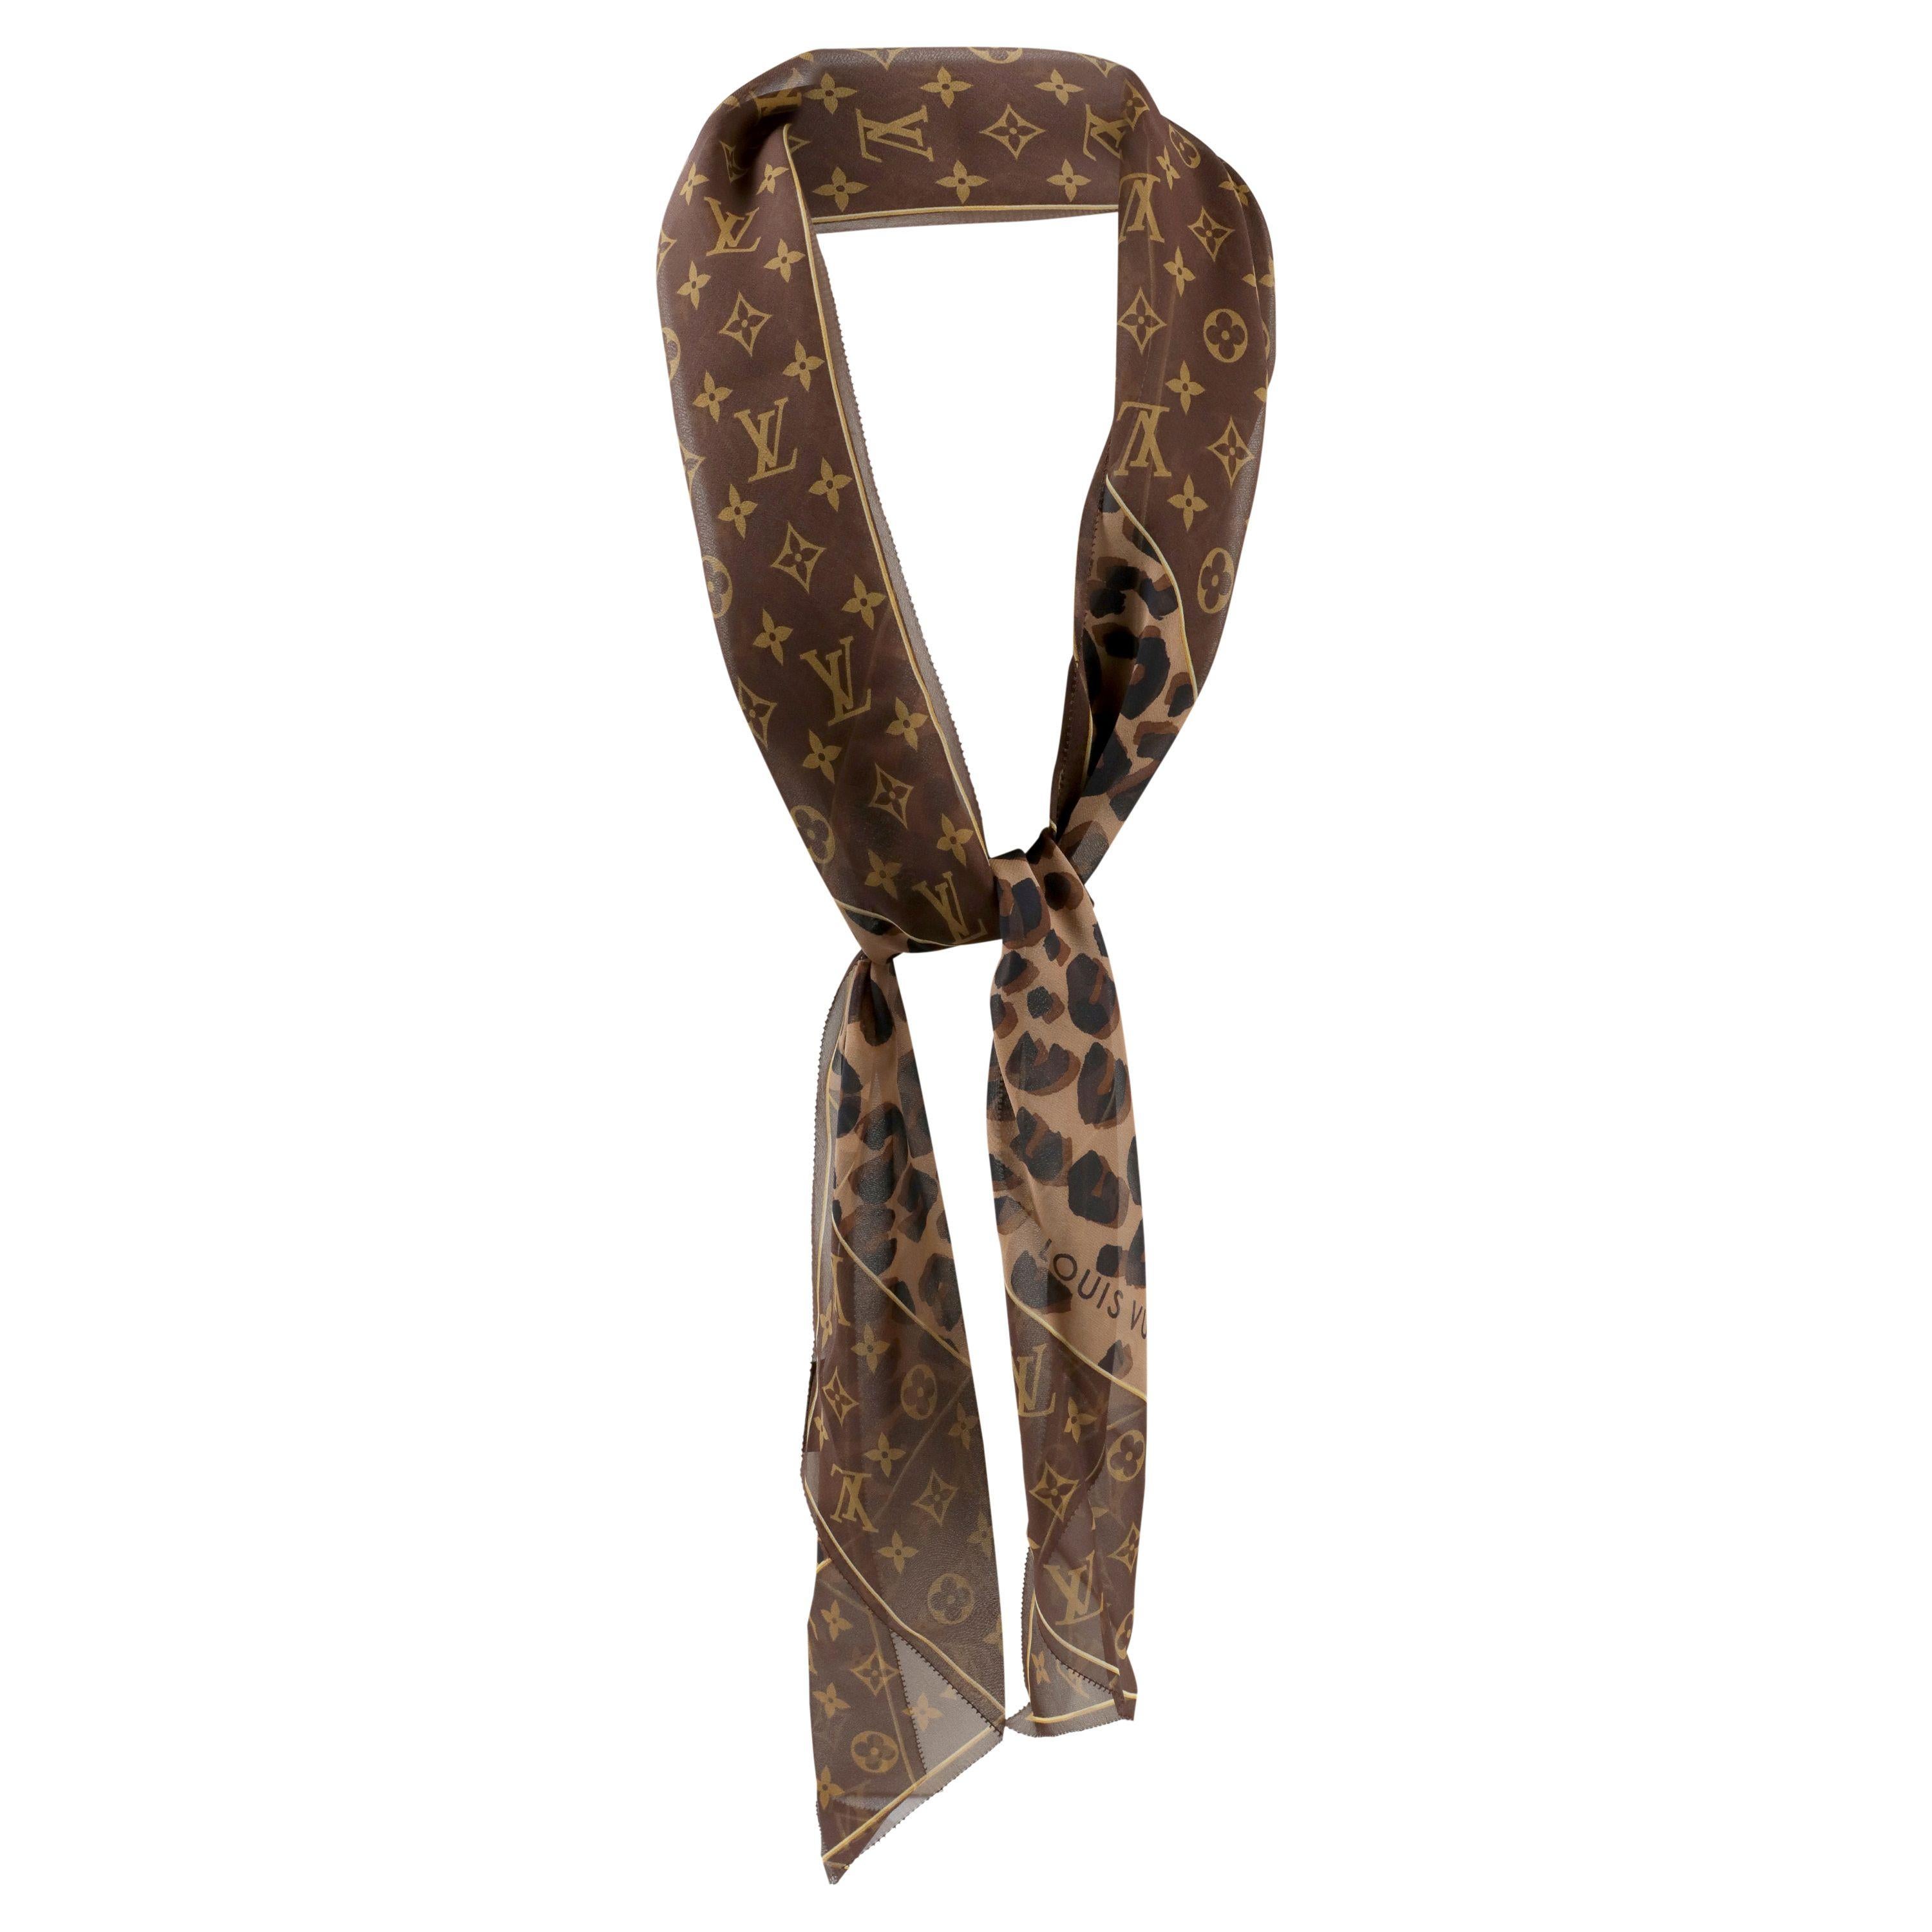 Cet authentique. Louis Vuitton Chiffon Cheetah Skinny Scarf est impeccable.  Le monogramme LV marron et tan est incorporé à l'imprimé animalier coordonné.  Fabriquées en Italie.  
PBF 13927
